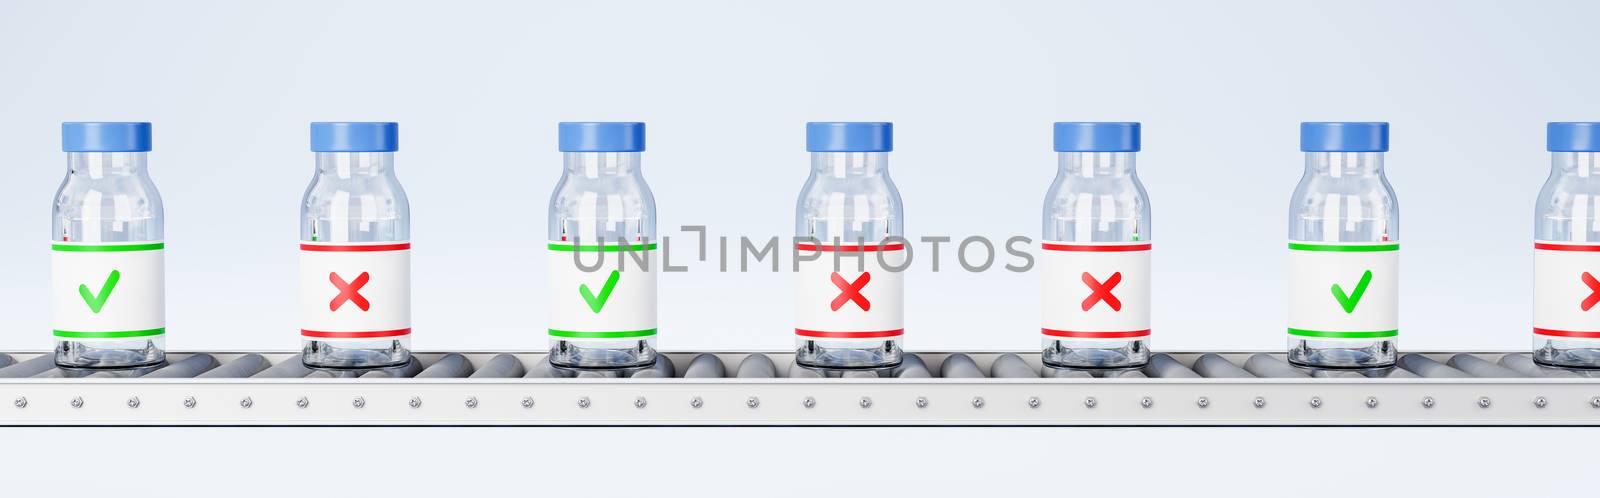 Medicine Bottles on Conveyor Belt, Quality Check Concept by make